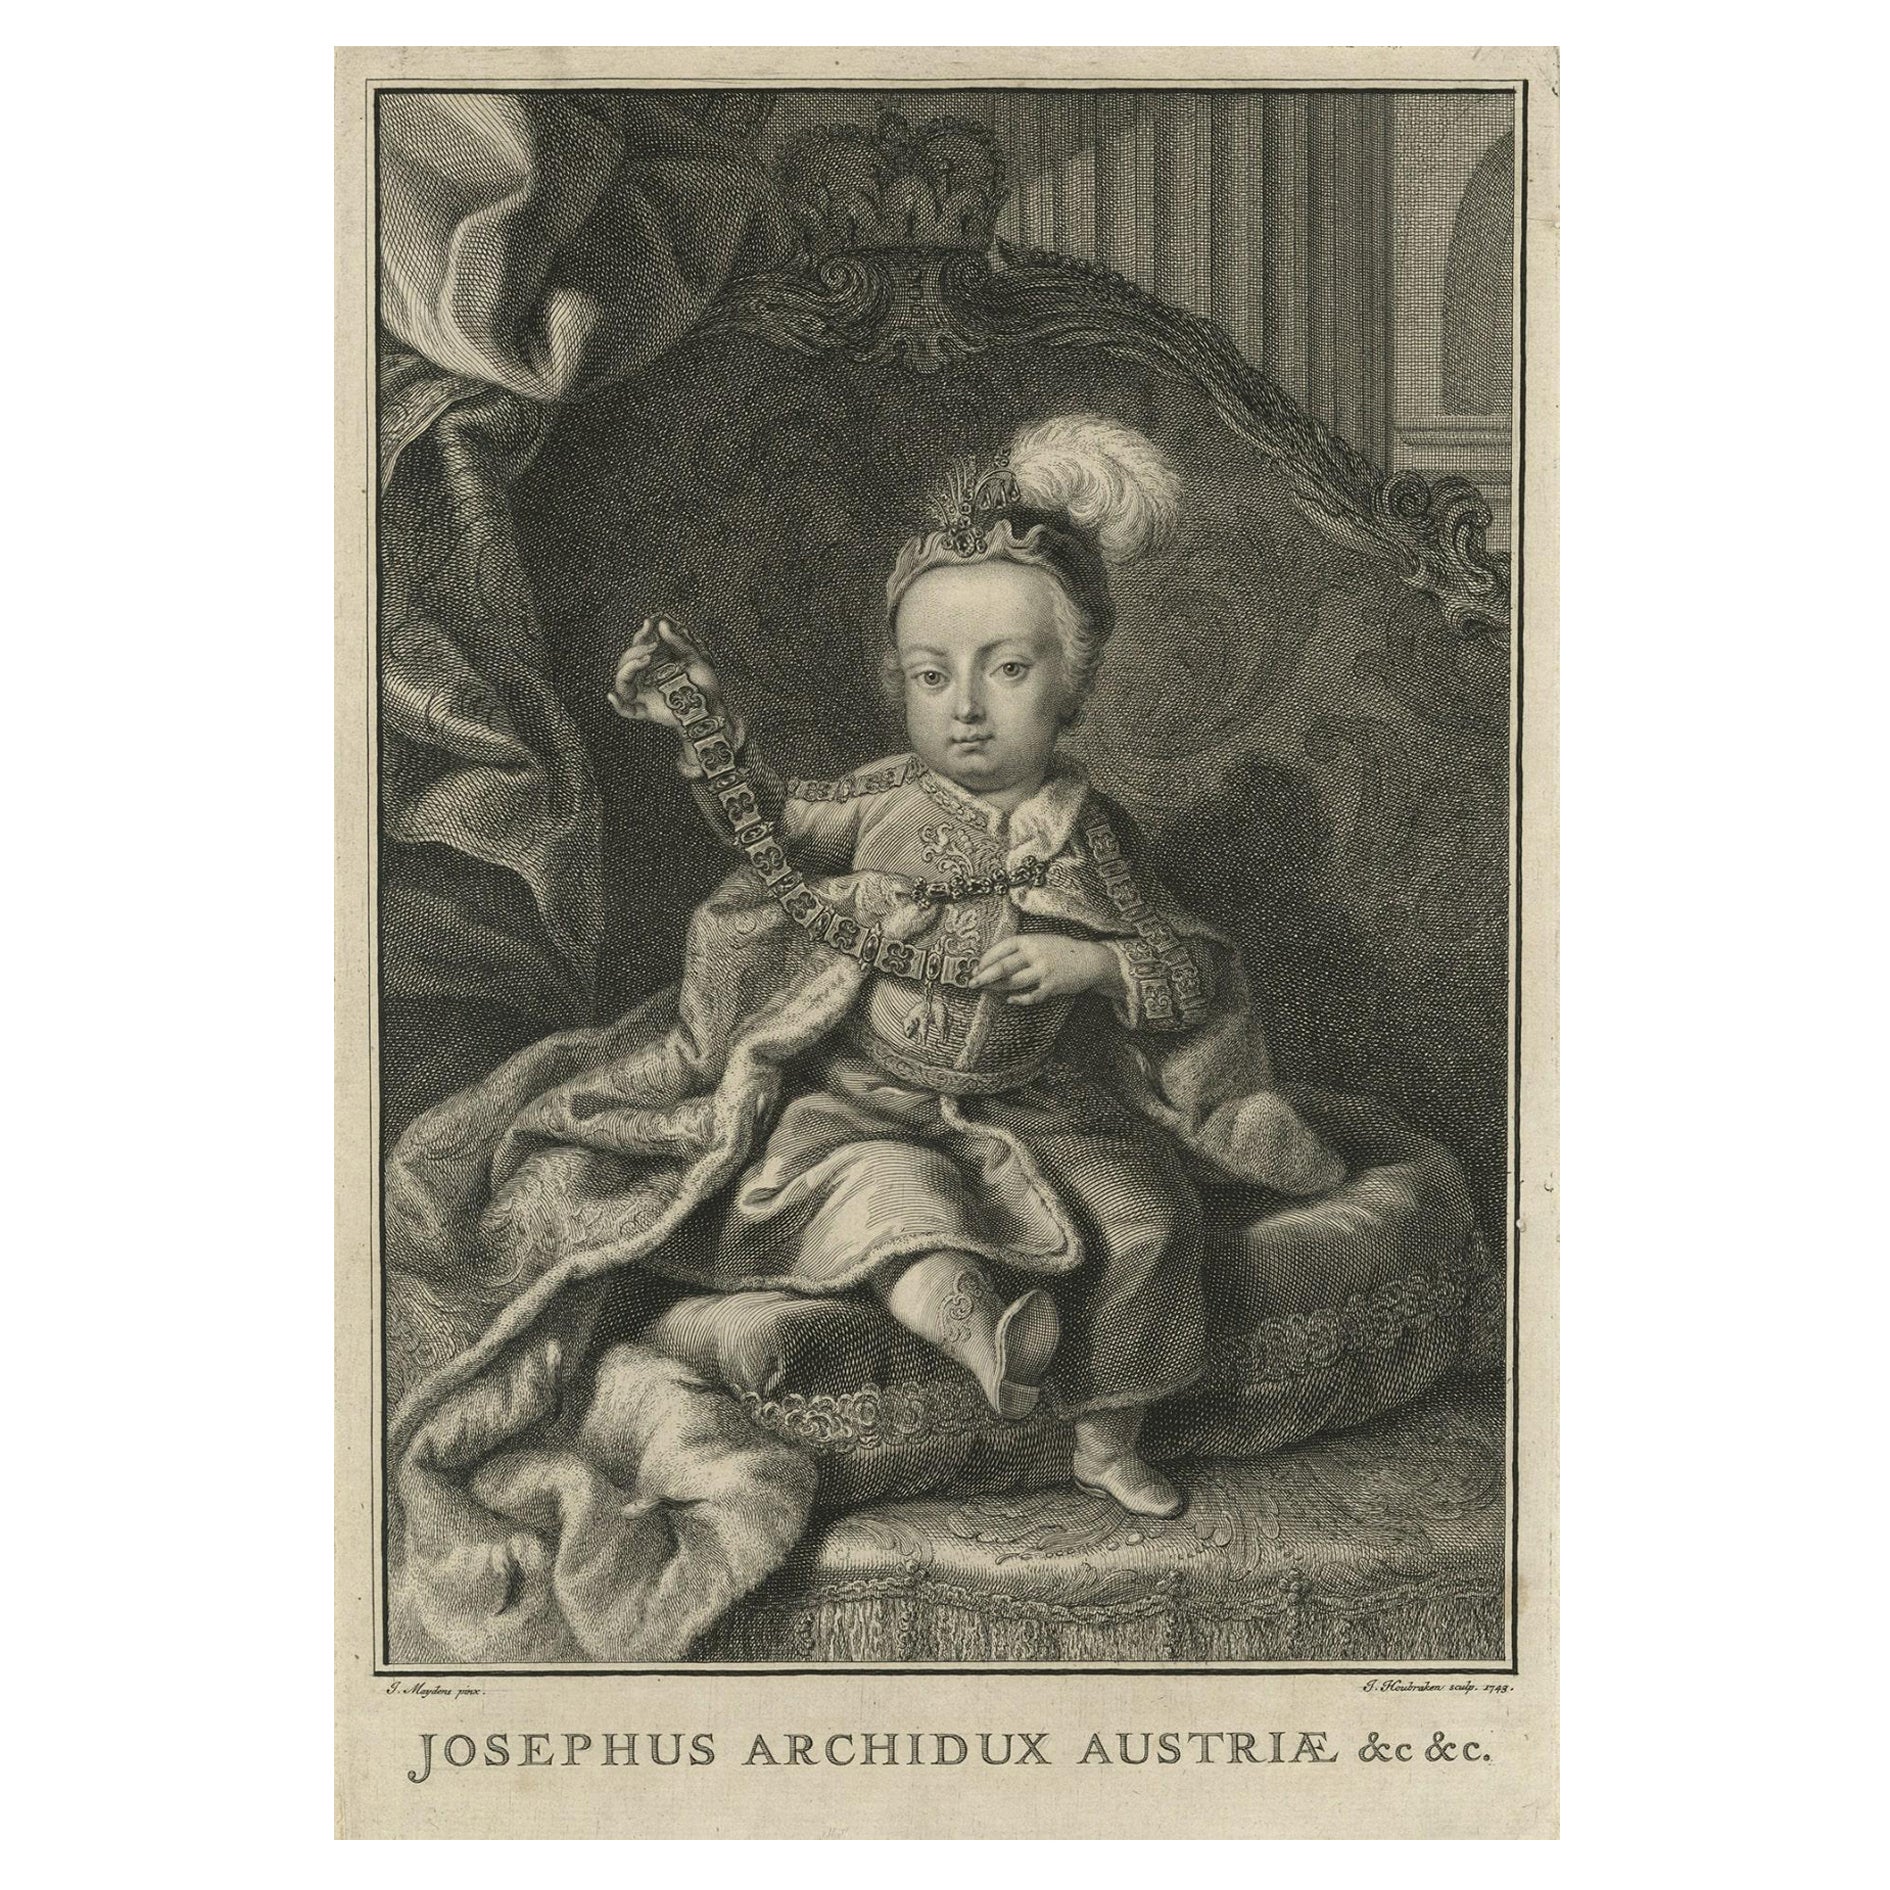 Heiliger römischer Kaiser Joseph I., Herrscher der österreichischen Habsburger Monarchie, 1743